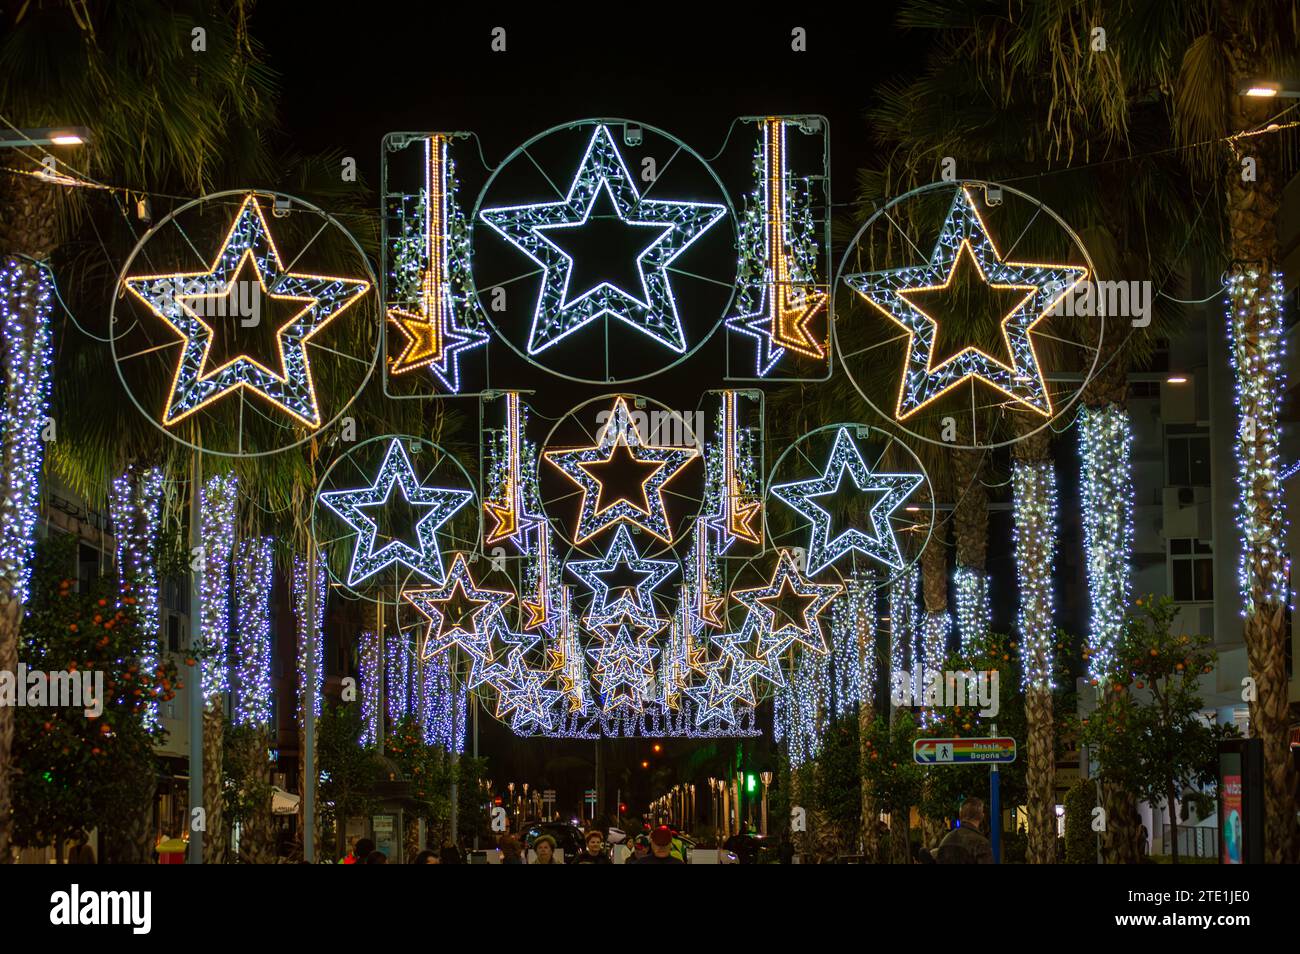 TORREMOLINOS, SPANIEN - 14. DEZEMBER 2023: Fangen Sie den festlichen Charme der Weihnachtsbeleuchtung und des Weihnachtsbaums in Torremolinos, Spanien, am 15. Dezember 2023 ein Stockfoto